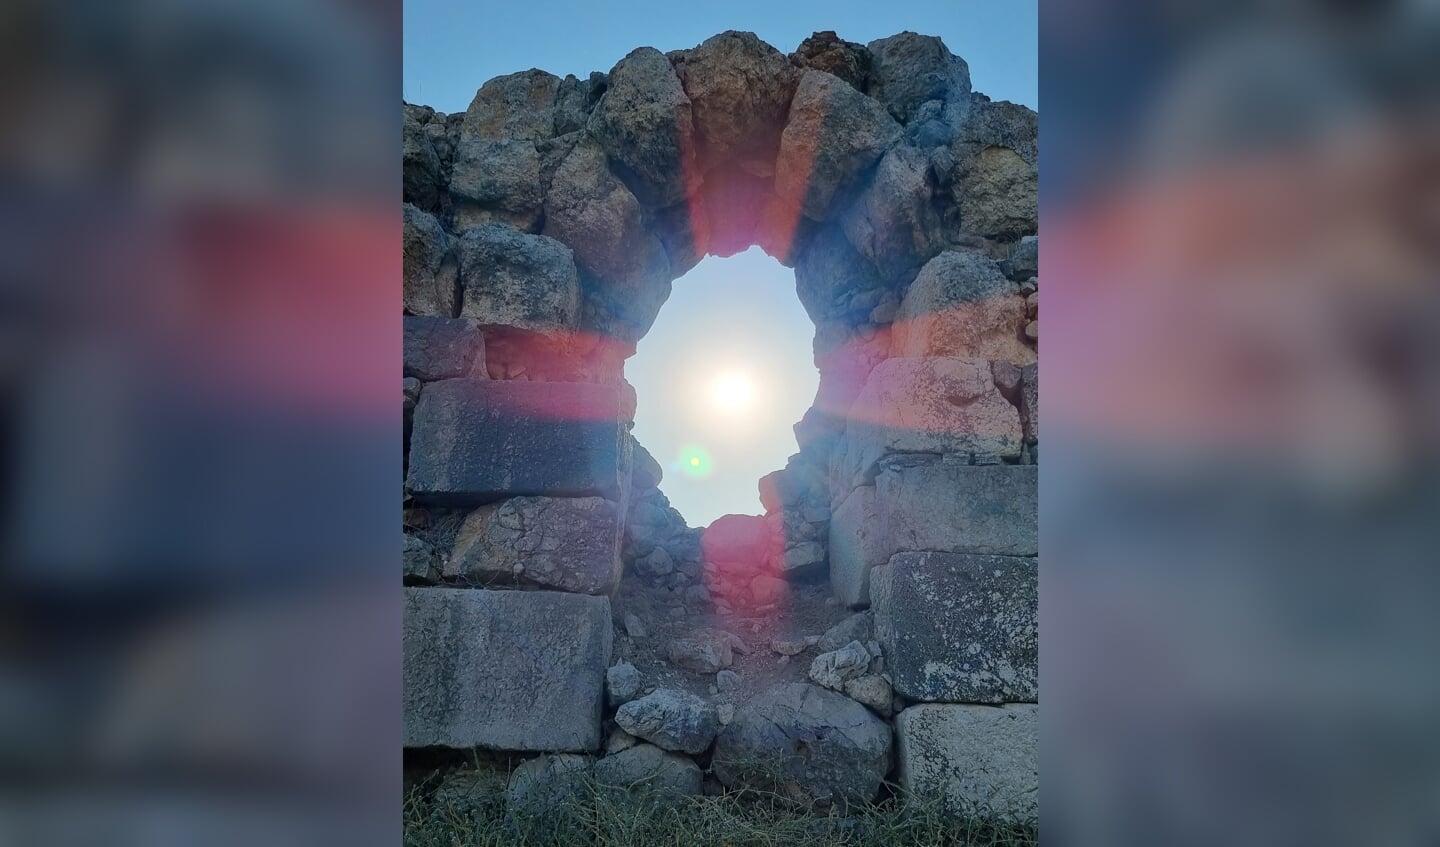 Deze zomer zijn we in Turkije geweest. Deze foto is gemaakt in Xantos, een antieke Lycische stad in het Zuid-Westen van Turkije. We waren blij verrast met dit beeld van de (onbewerkte!) zonnestralen door dit antieke gesteente.